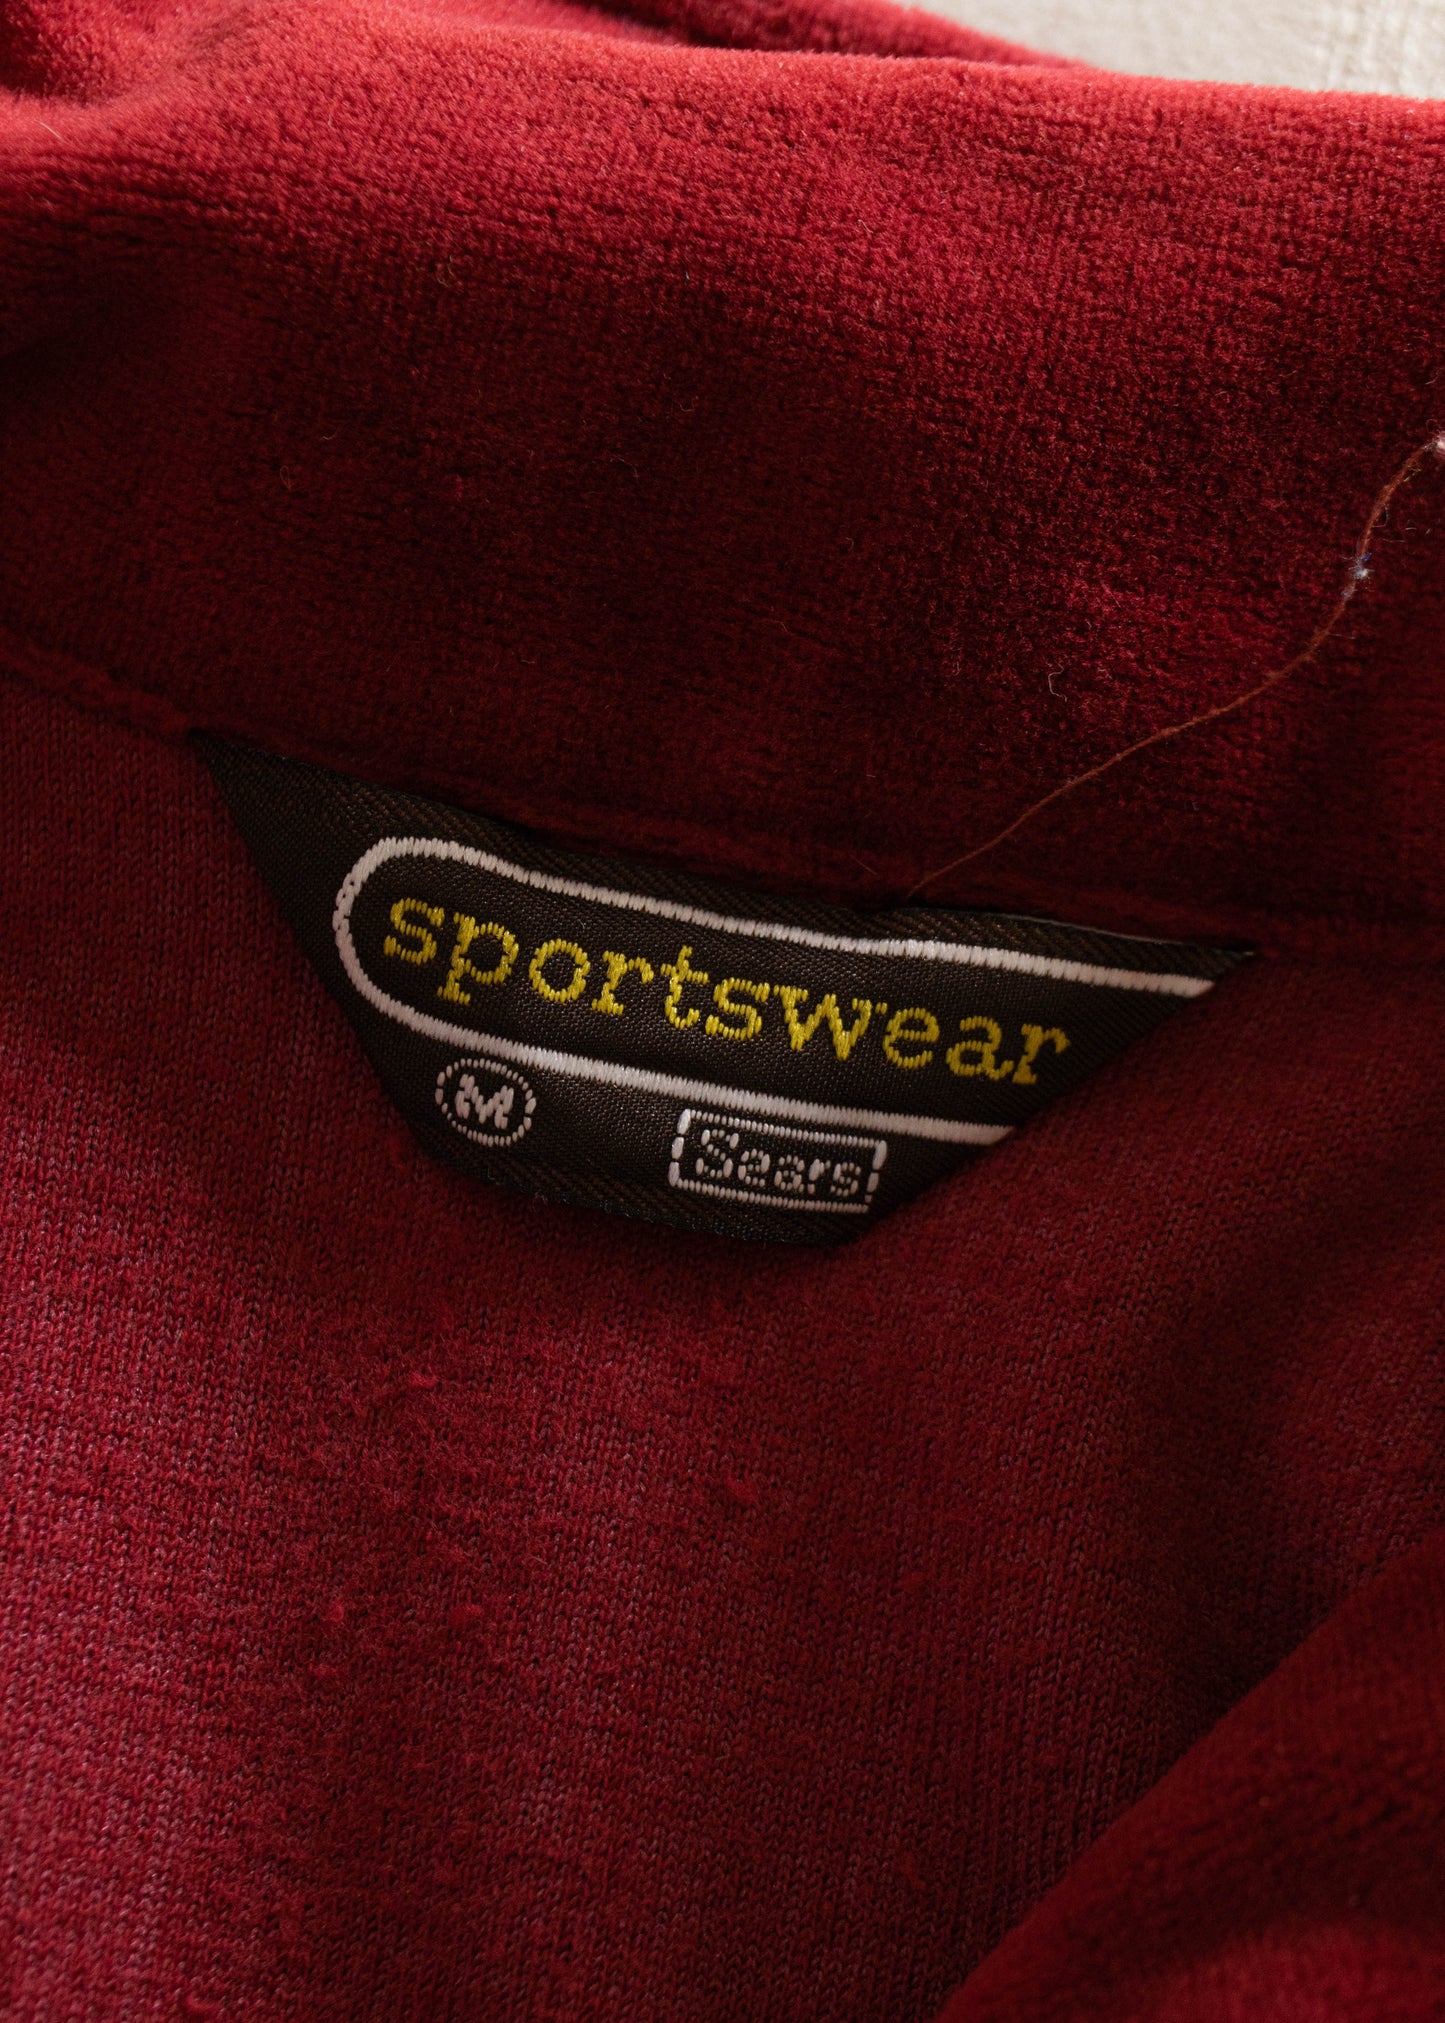 1980s Sears Sportswear Velour Long Sleeve Shirt Size S/M